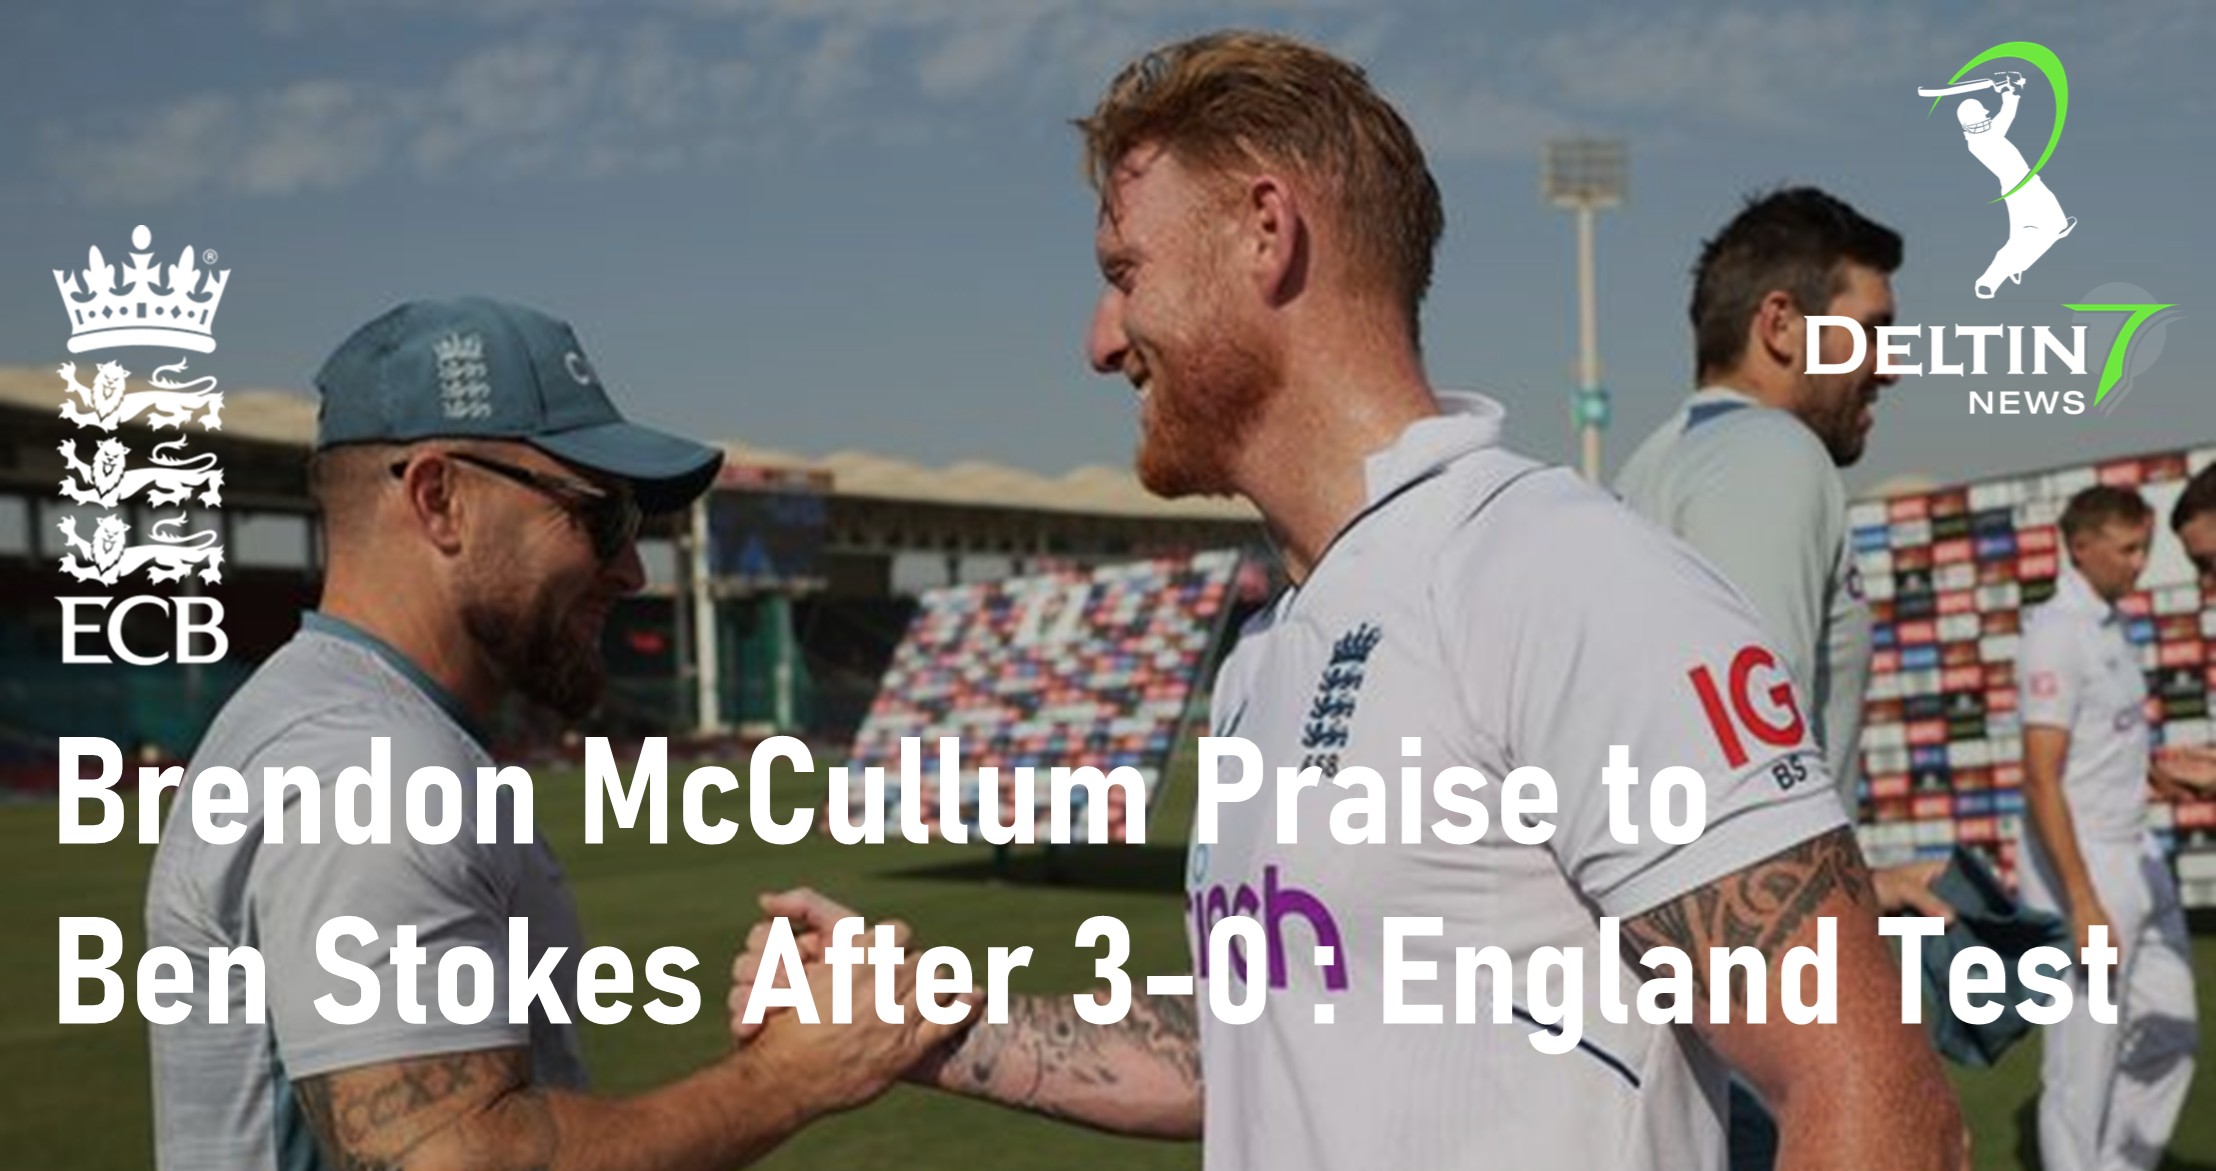 Brendon McCullum Ben Stokes England Test